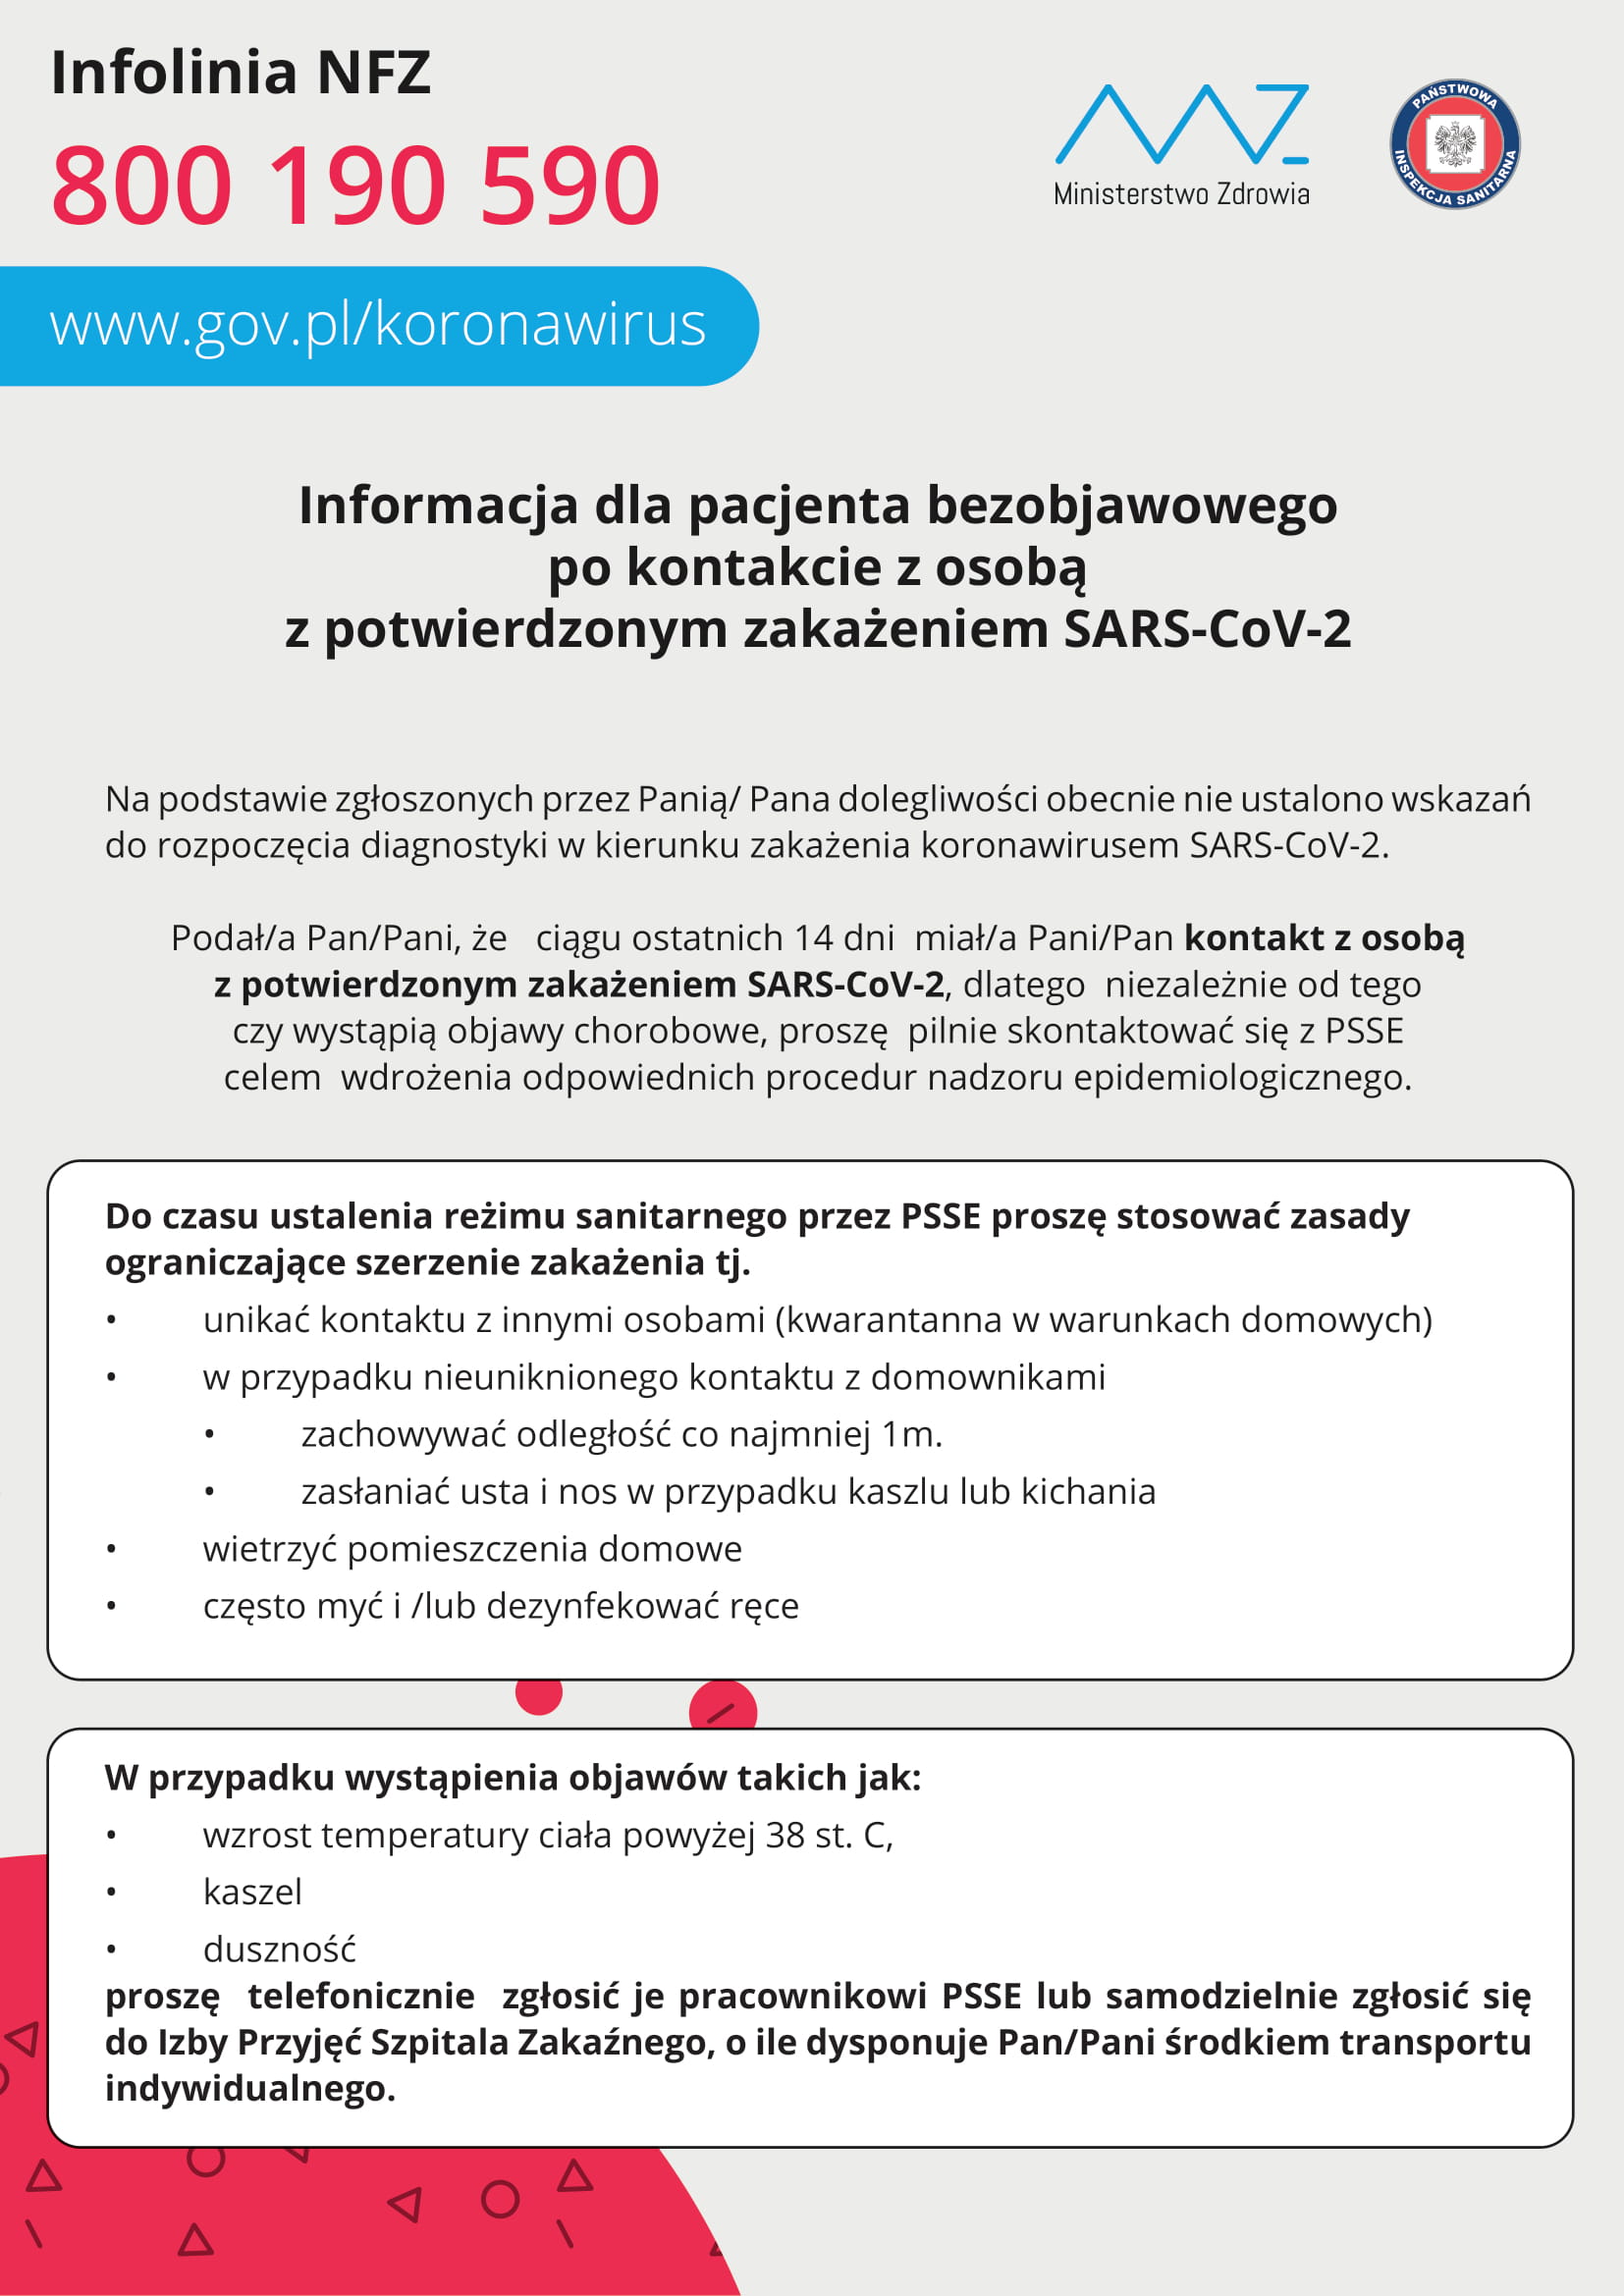 Informacja dla pacjenta bezobjawowego po kontakcie z SARS-COV-2